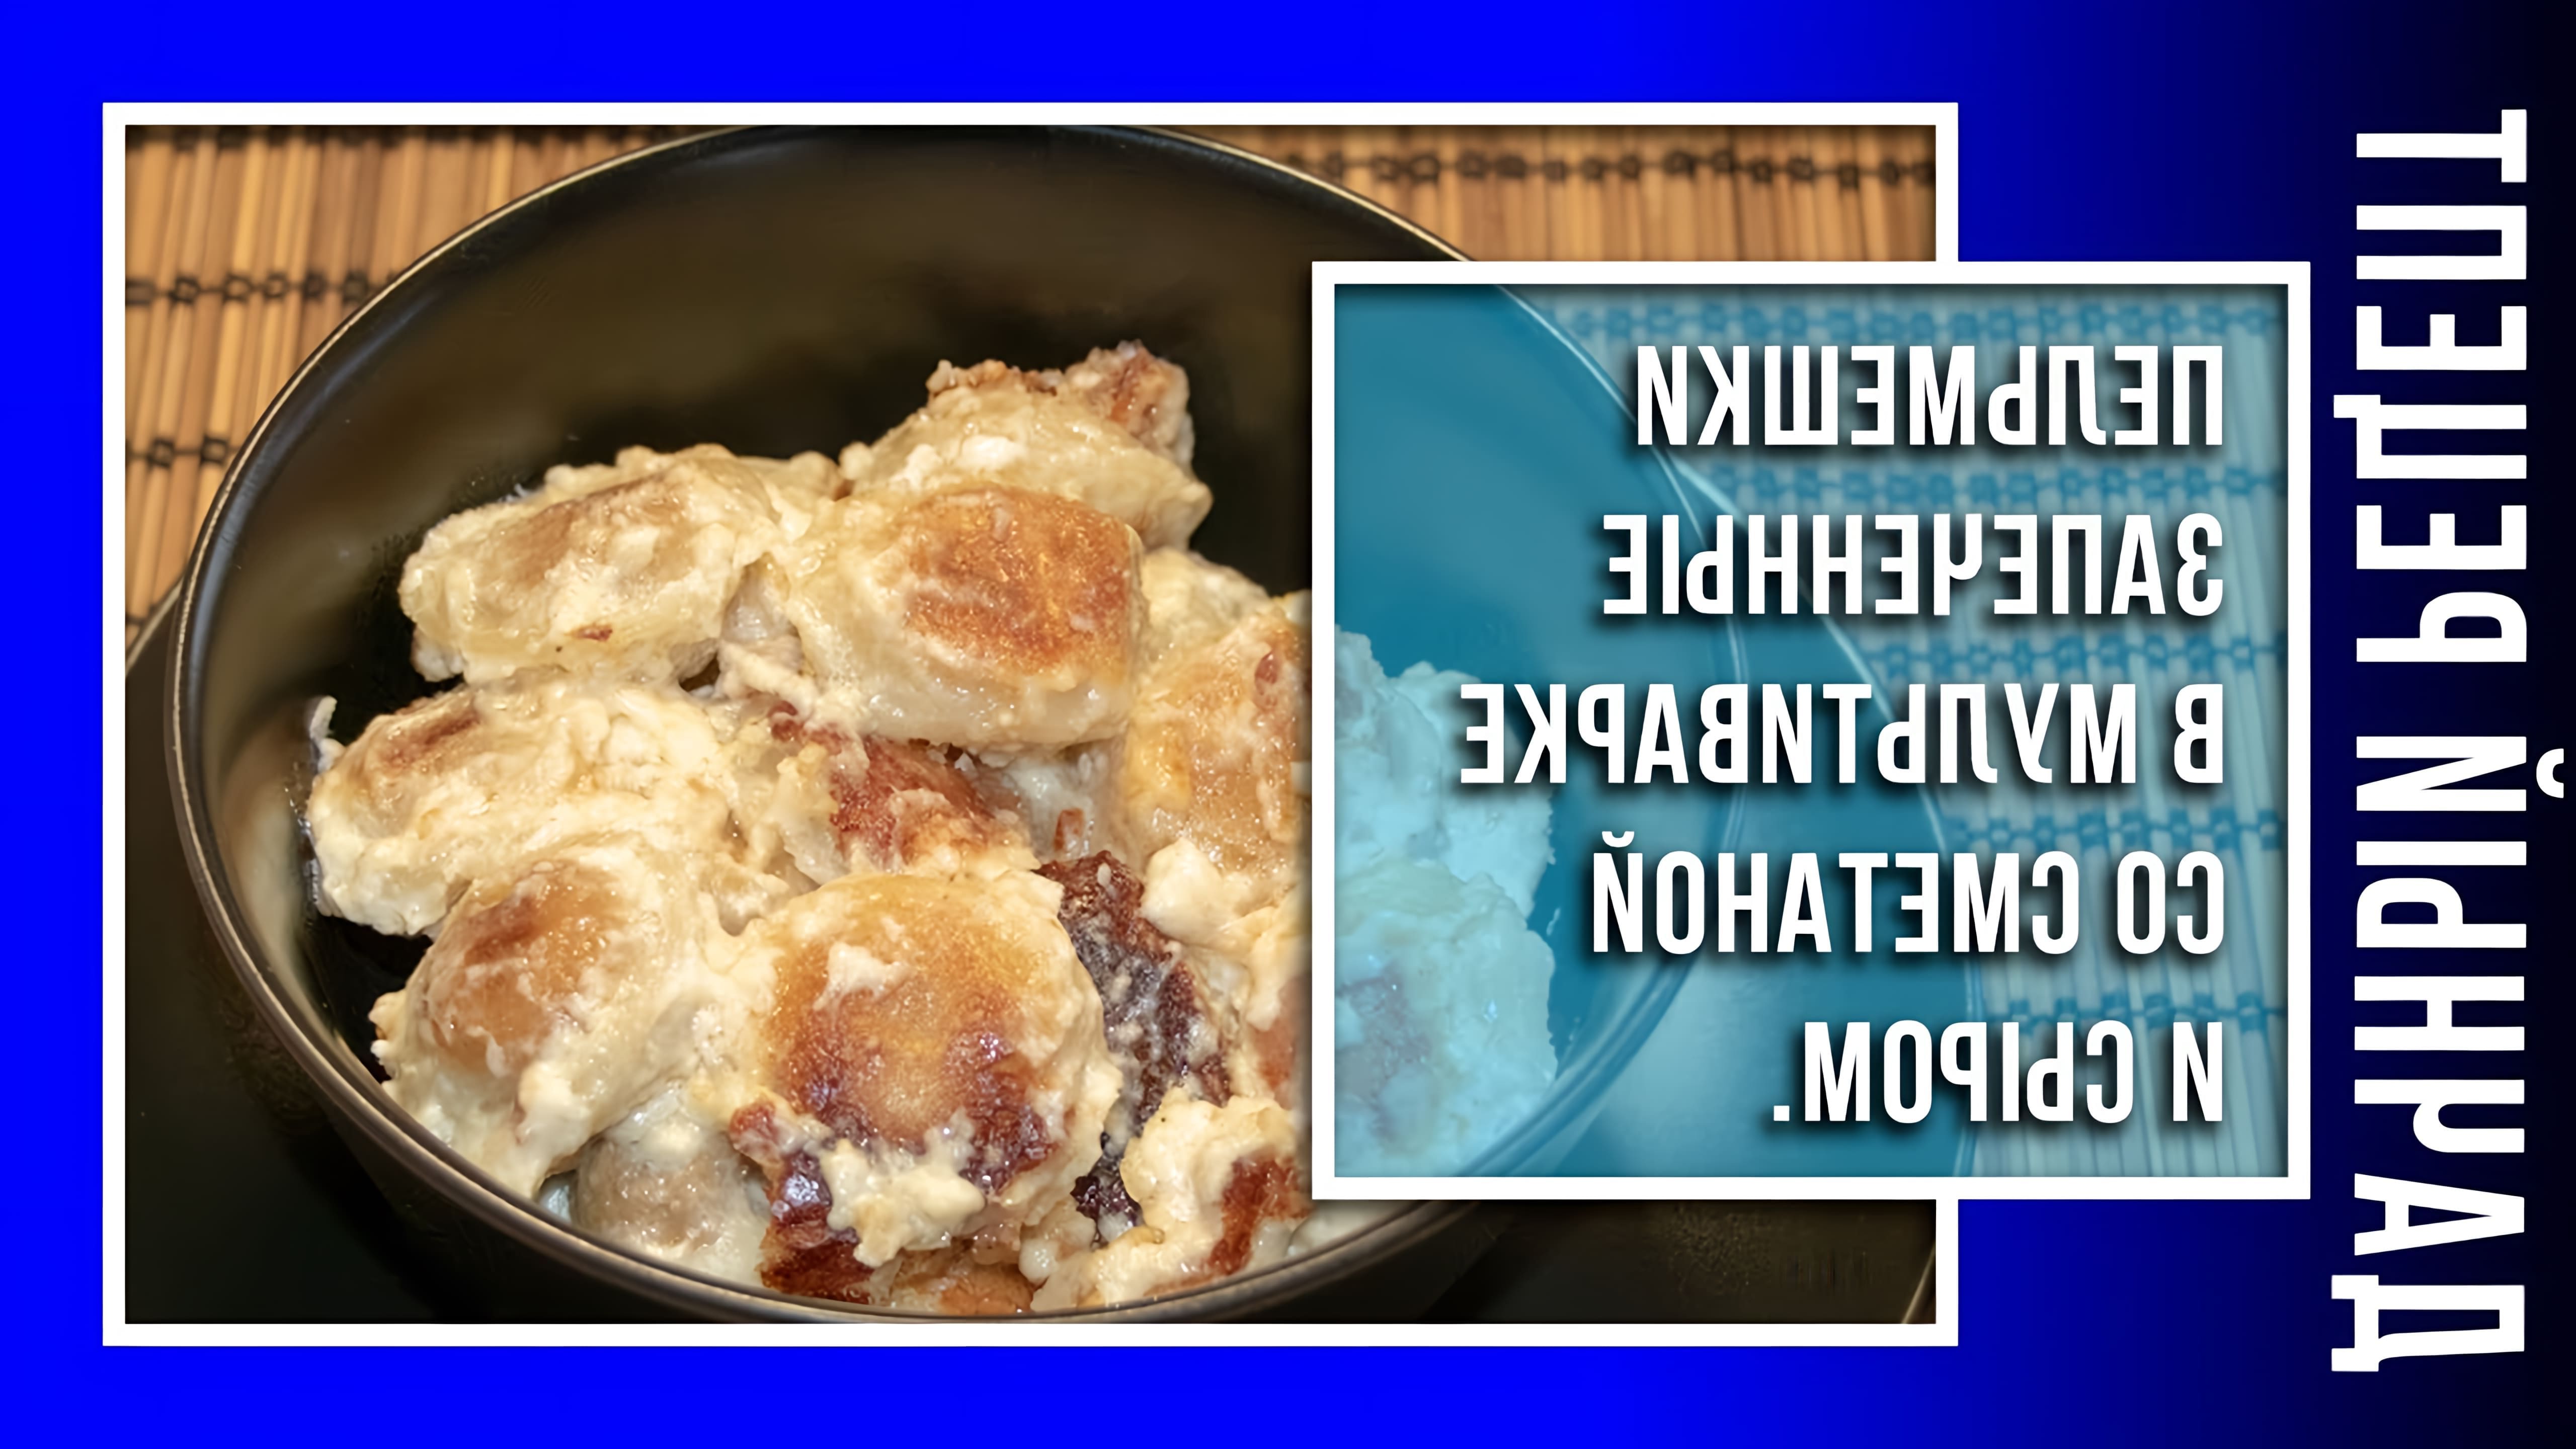 В этом видео автор делится простым рецептом приготовления пельменей в мультиварке со сметаной и сыром